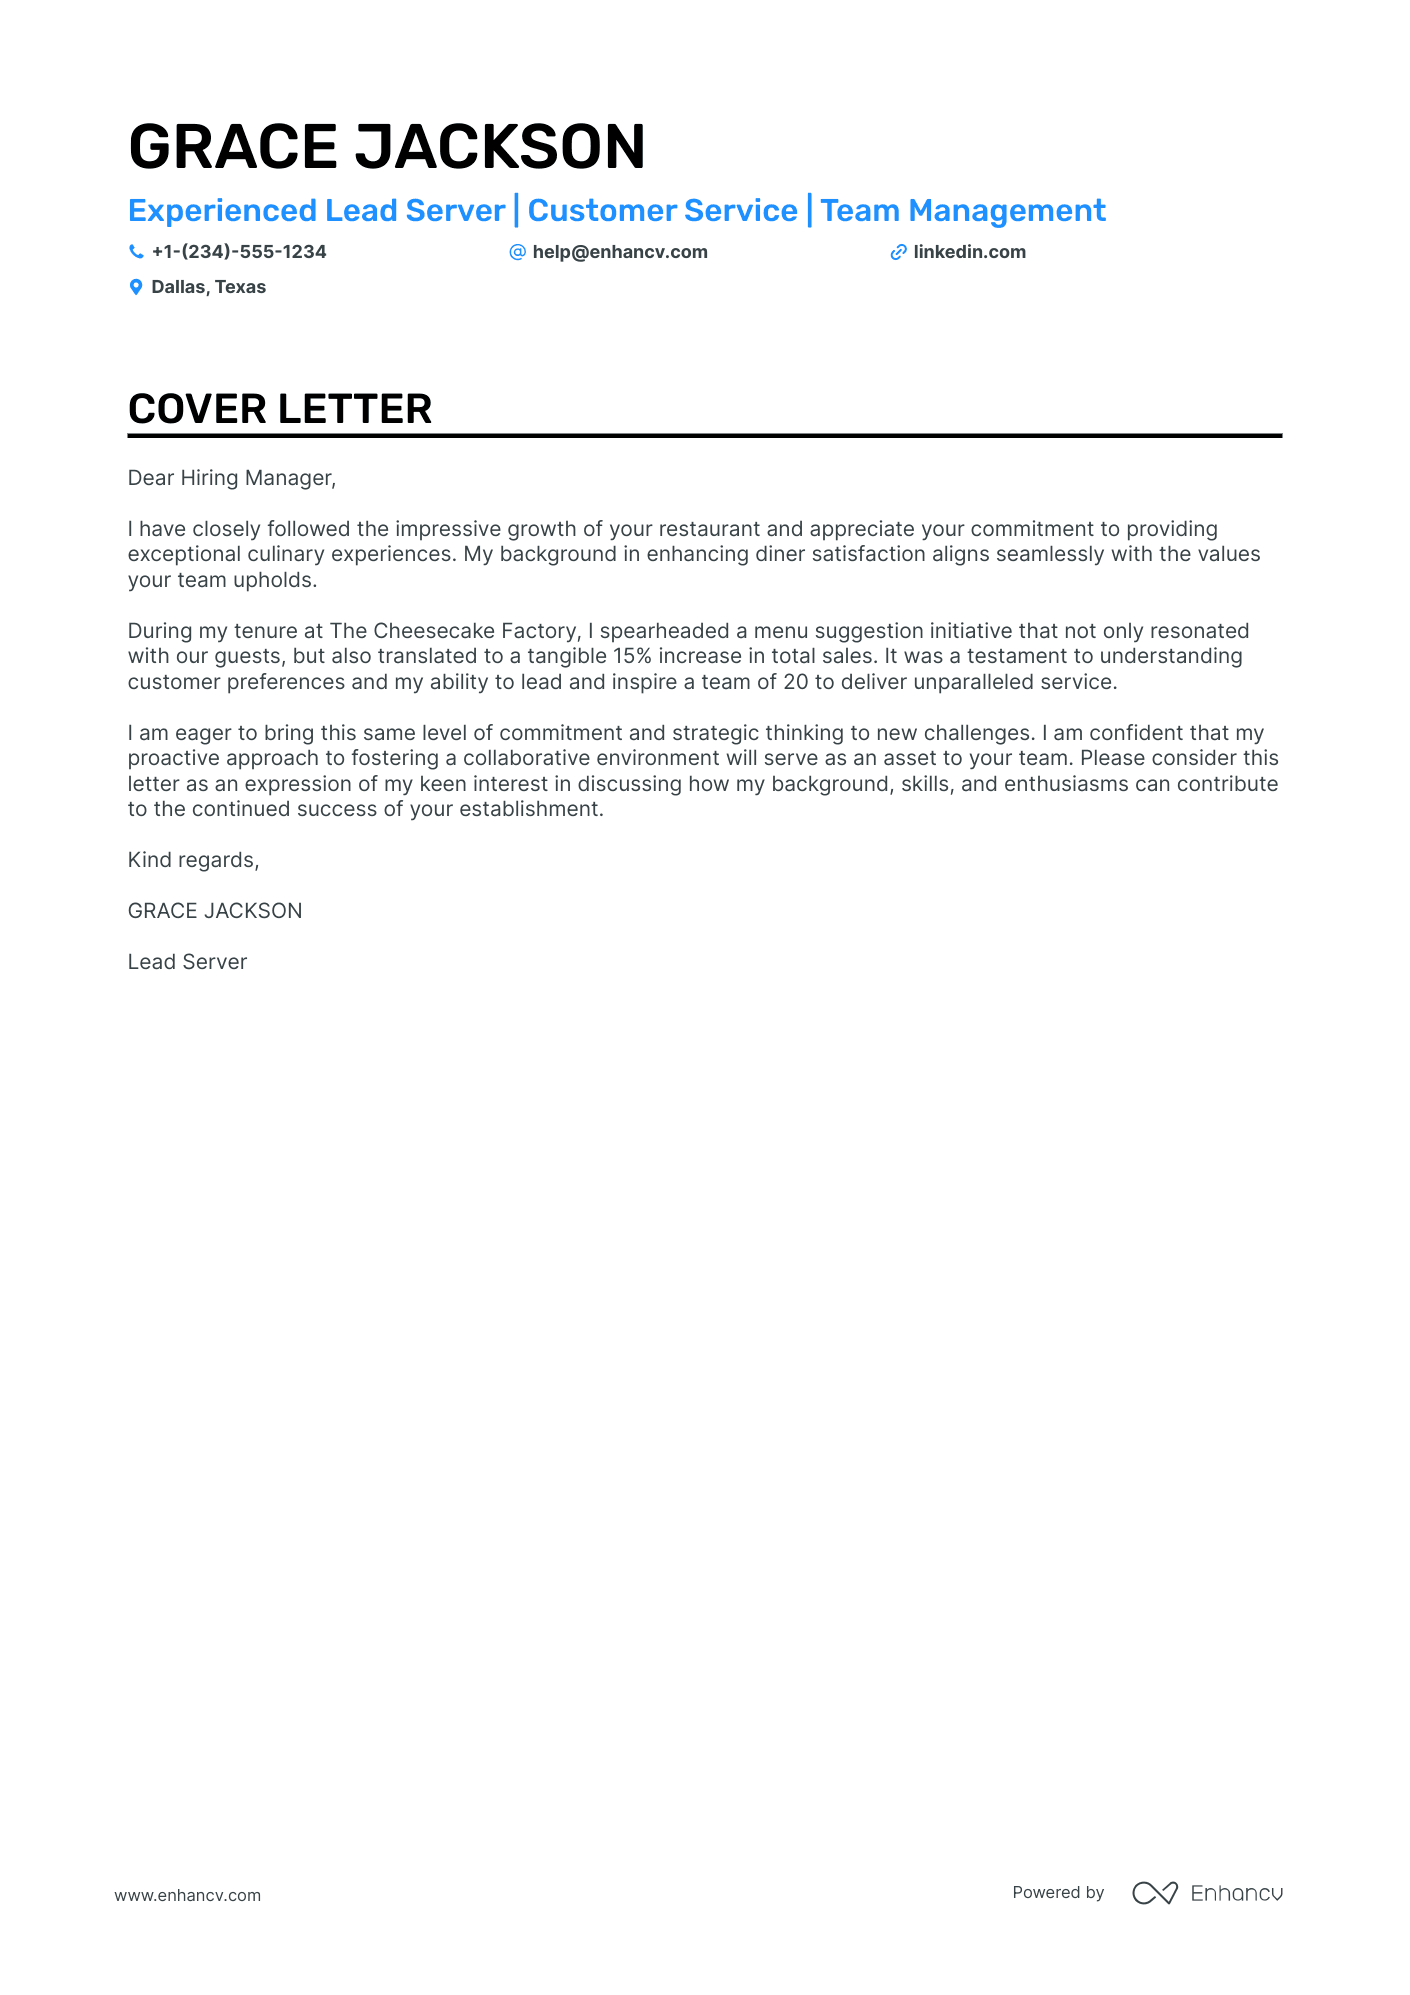 cover letter sample for server position